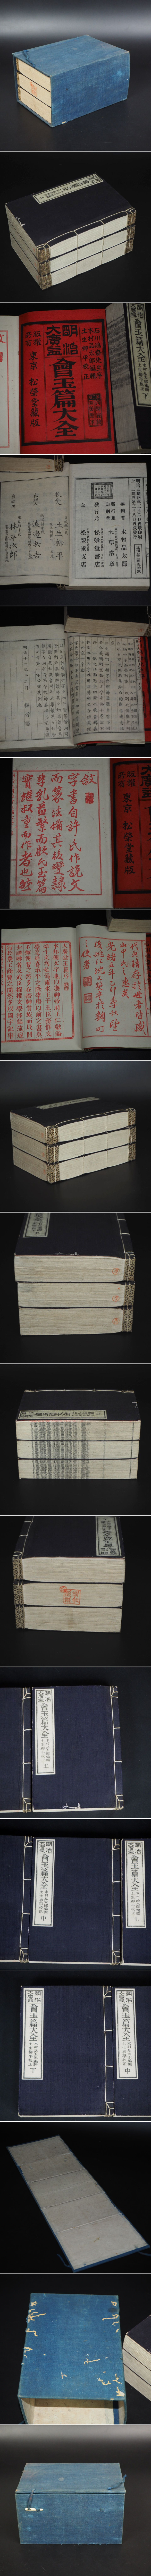 日本製新品値下げ中「明治大広益會玉篇大全」明治34年（1901年）再版 木村品太郎 編 松栄堂蔵版 和書